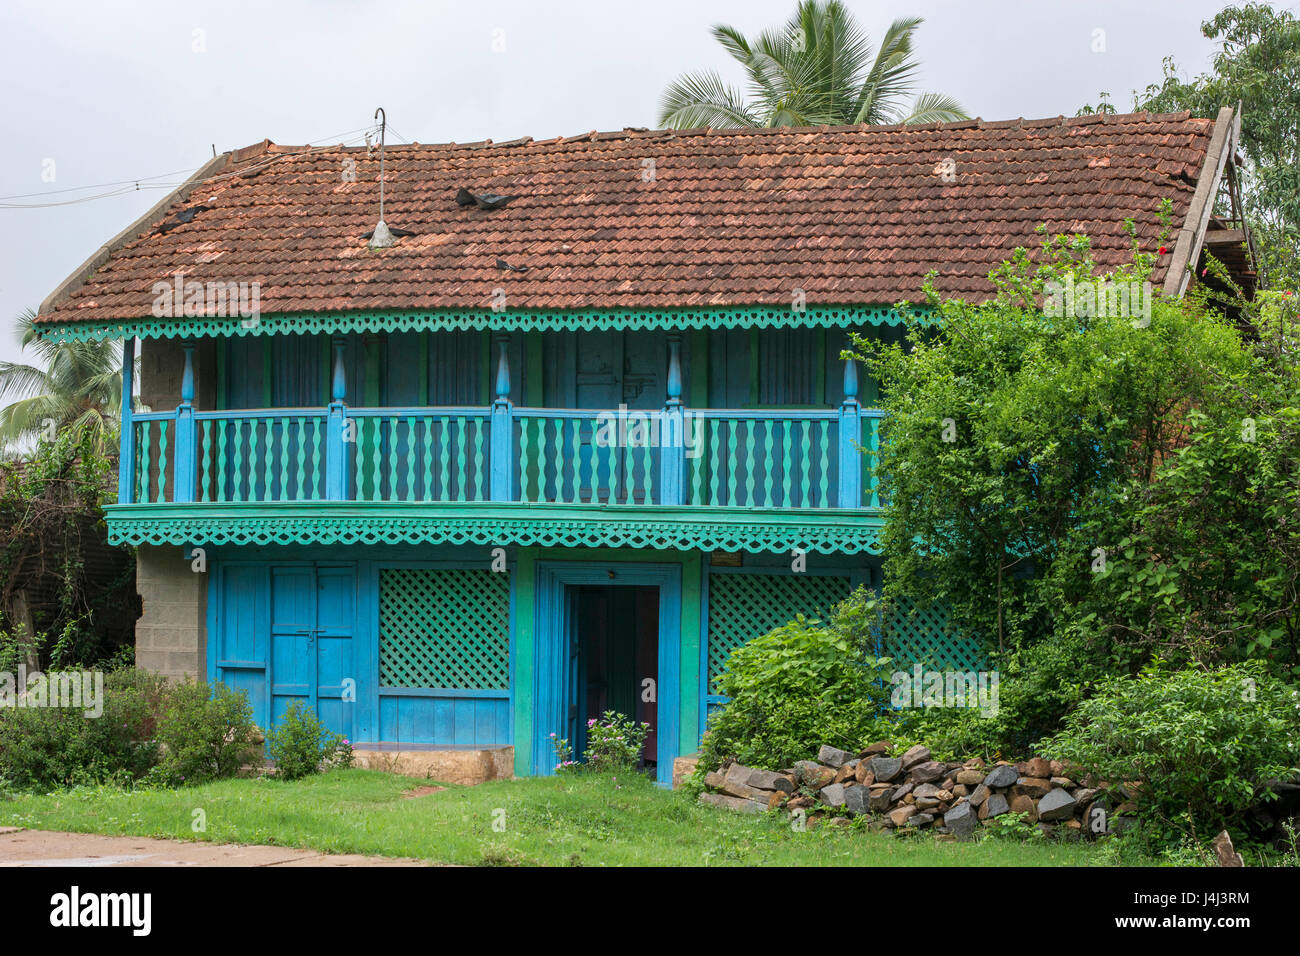 Old house, mundgod, karnataka, india, asia Stock Photo